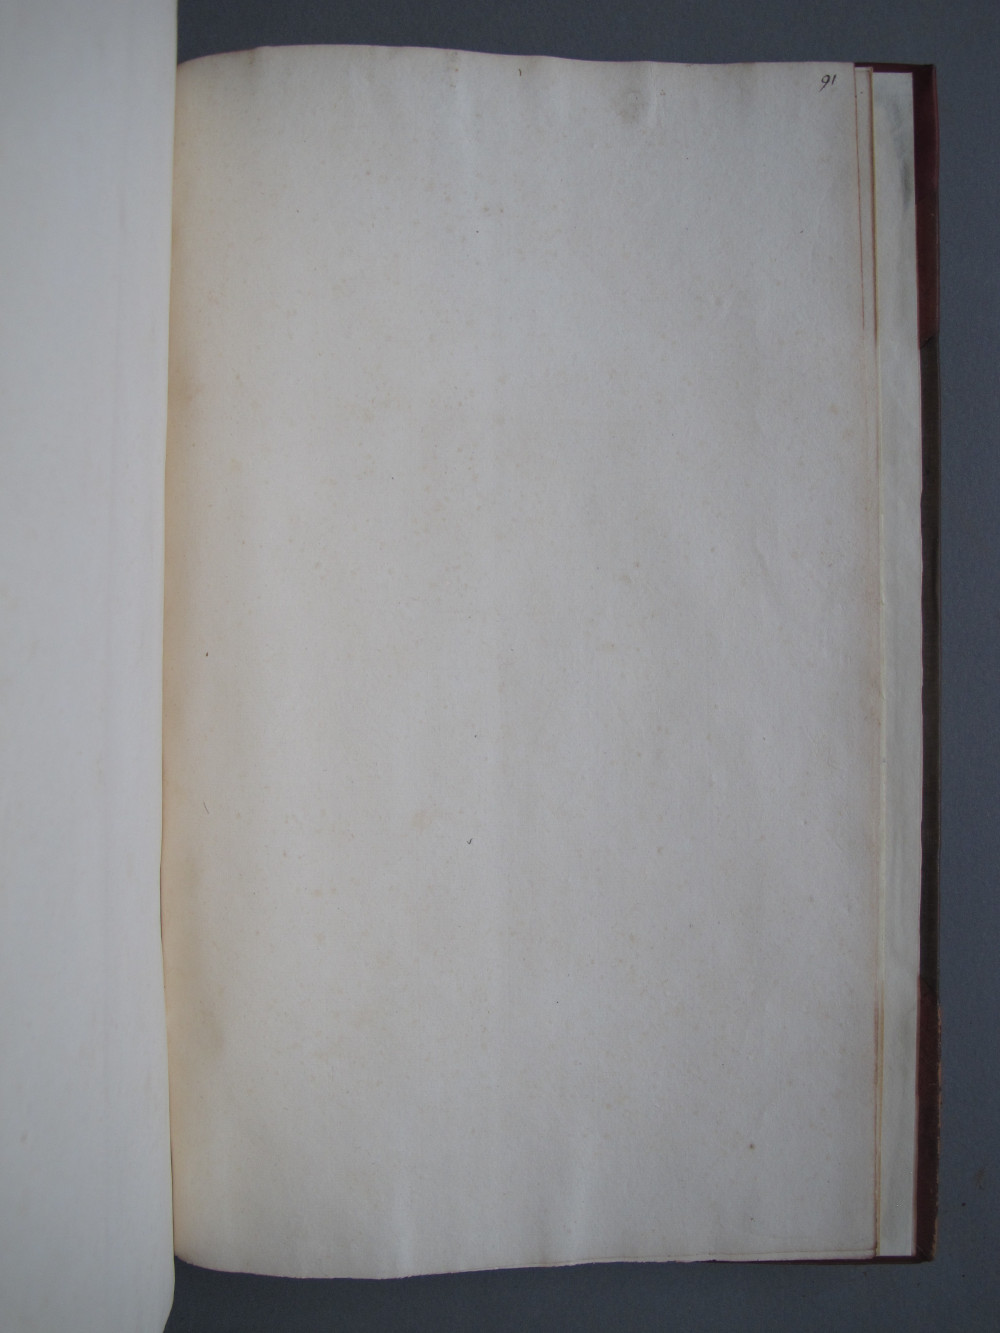 Folio 91 recto